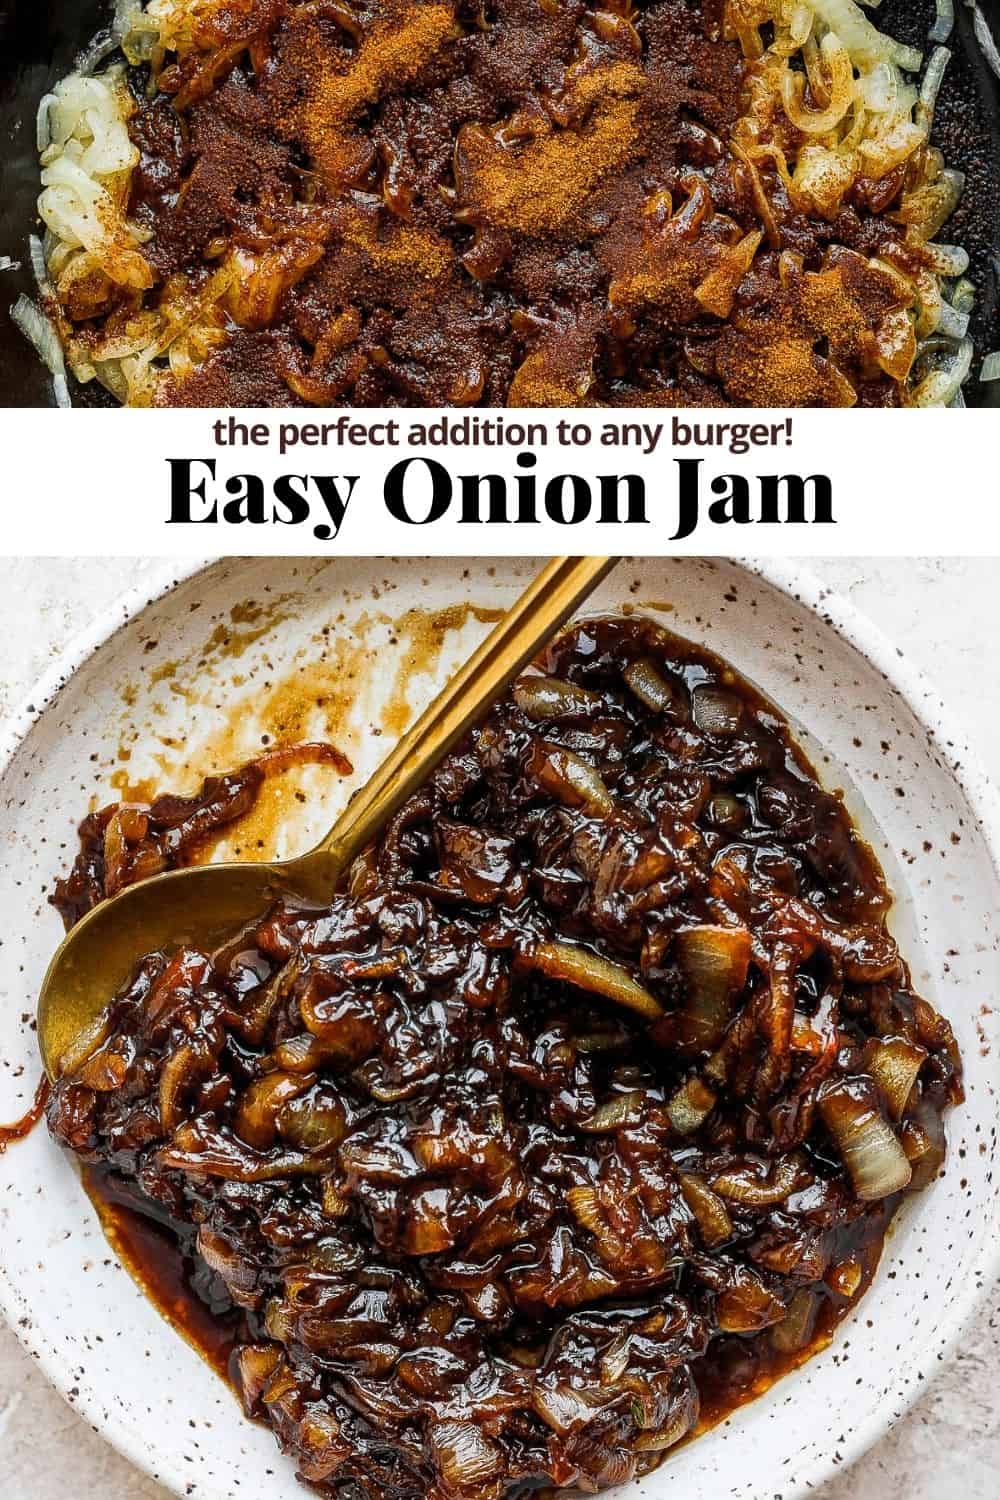 Pinterest image for onion jam.